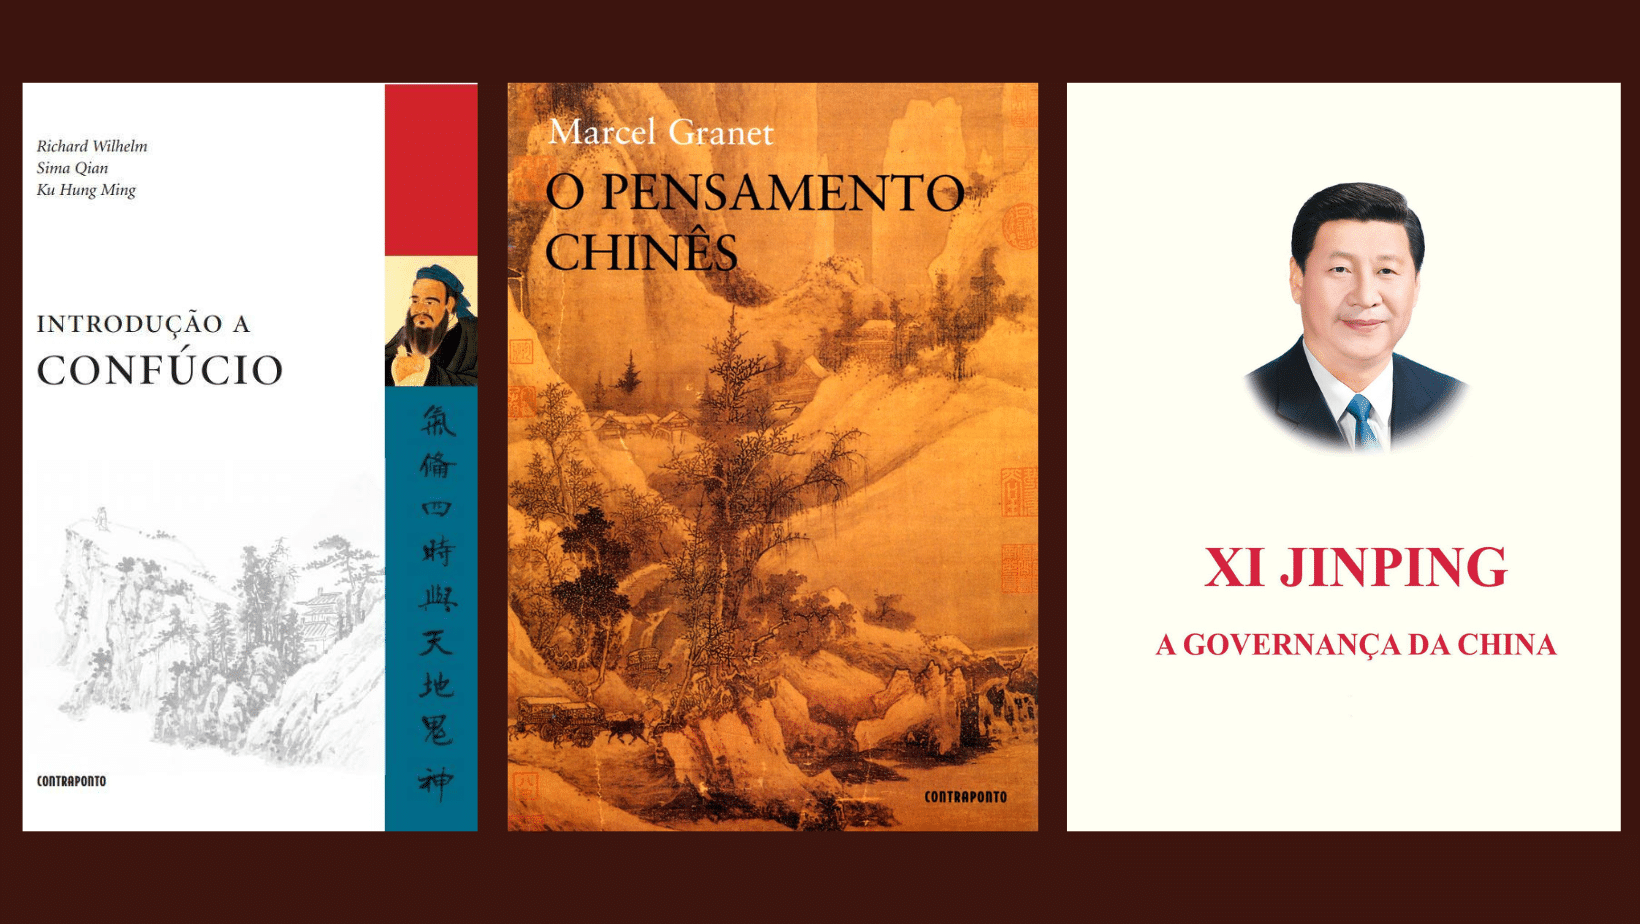 revistaprosaversoearte.com - Pré-venda do livro 'Enciclopédia da Cultura Chinesa', de Xu Baofeng e Yan Qiaorong